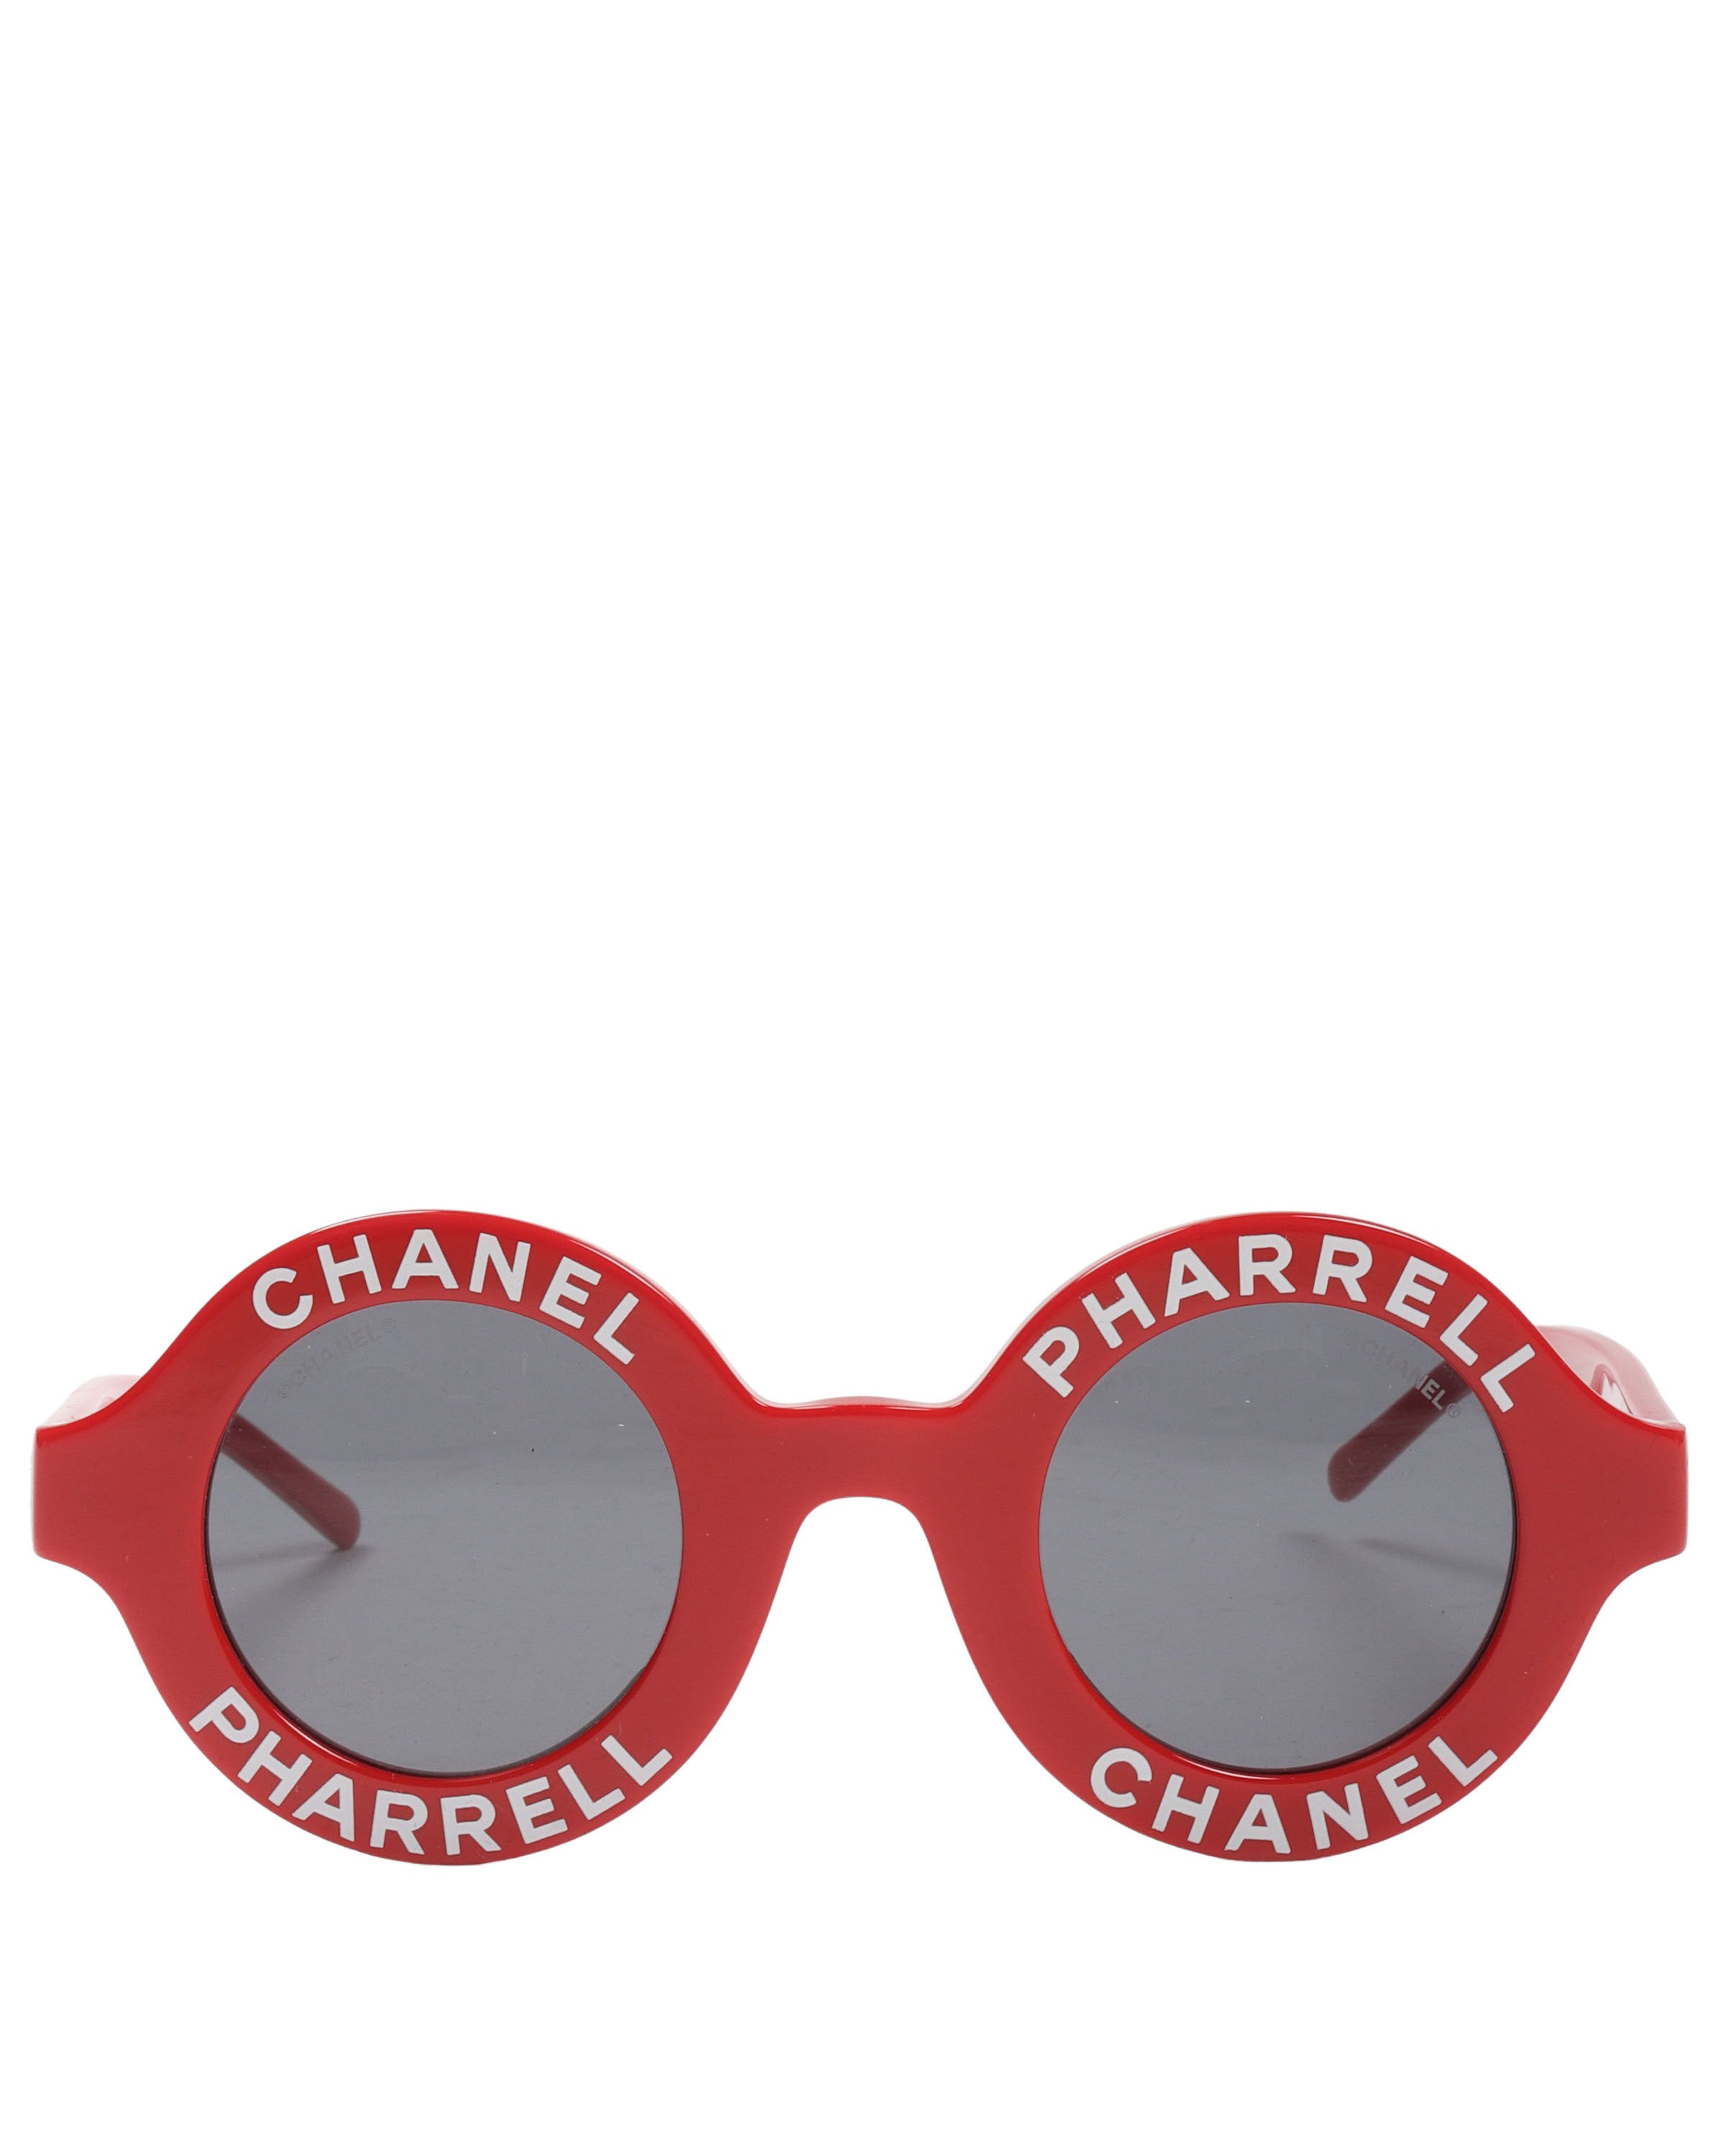 Pharrell Glasses